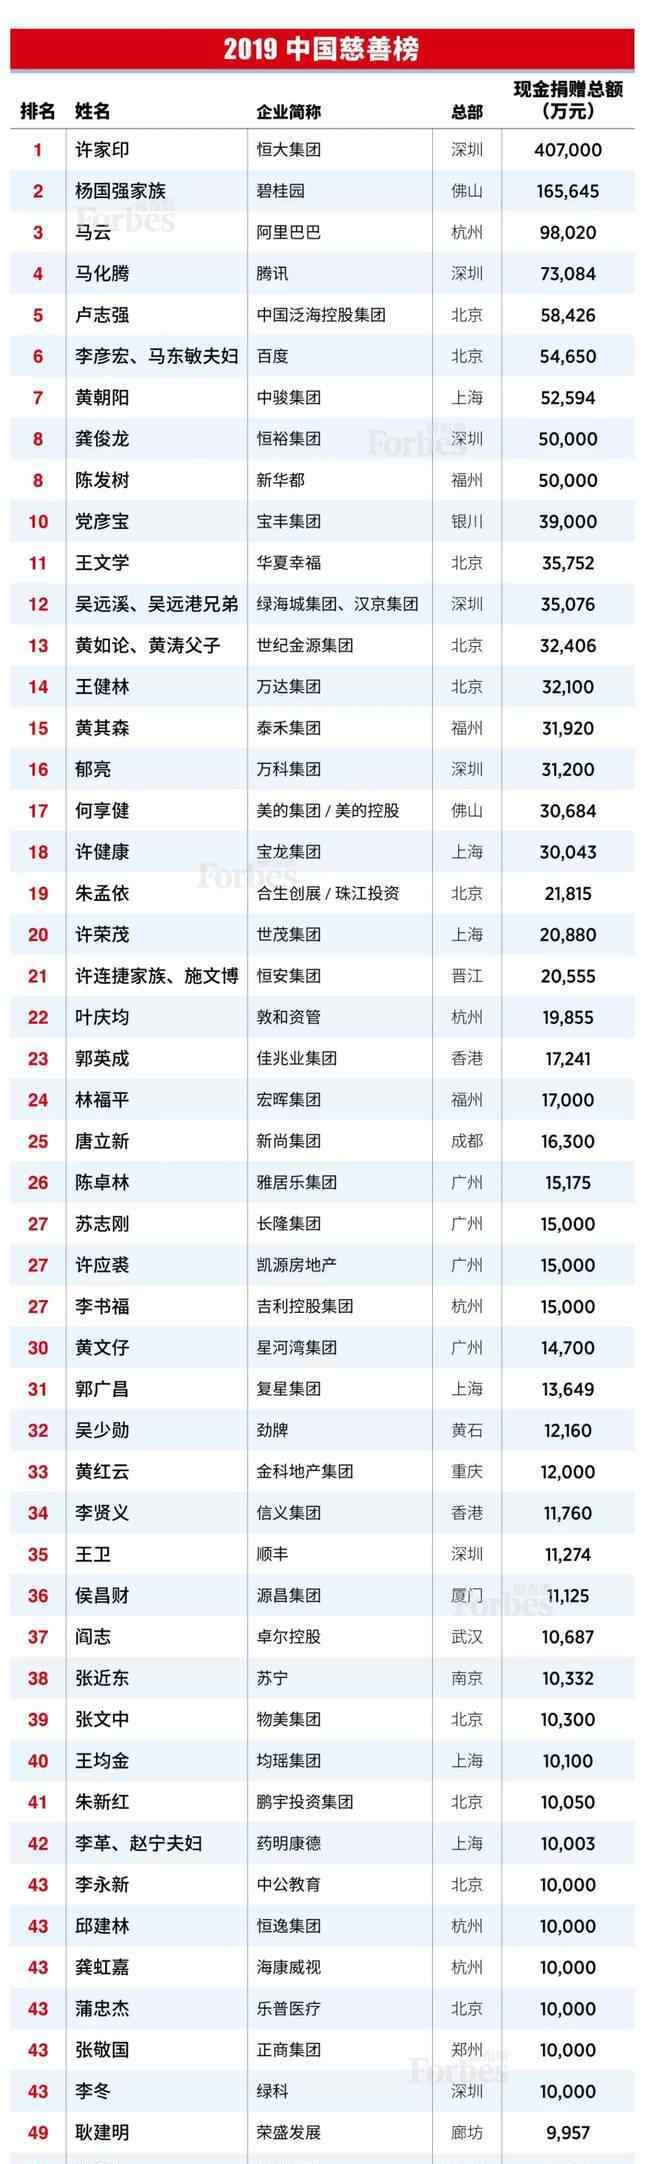 中国首富是谁 【完整榜单】2019中国慈善榜 来看看排名第一的富豪是谁？